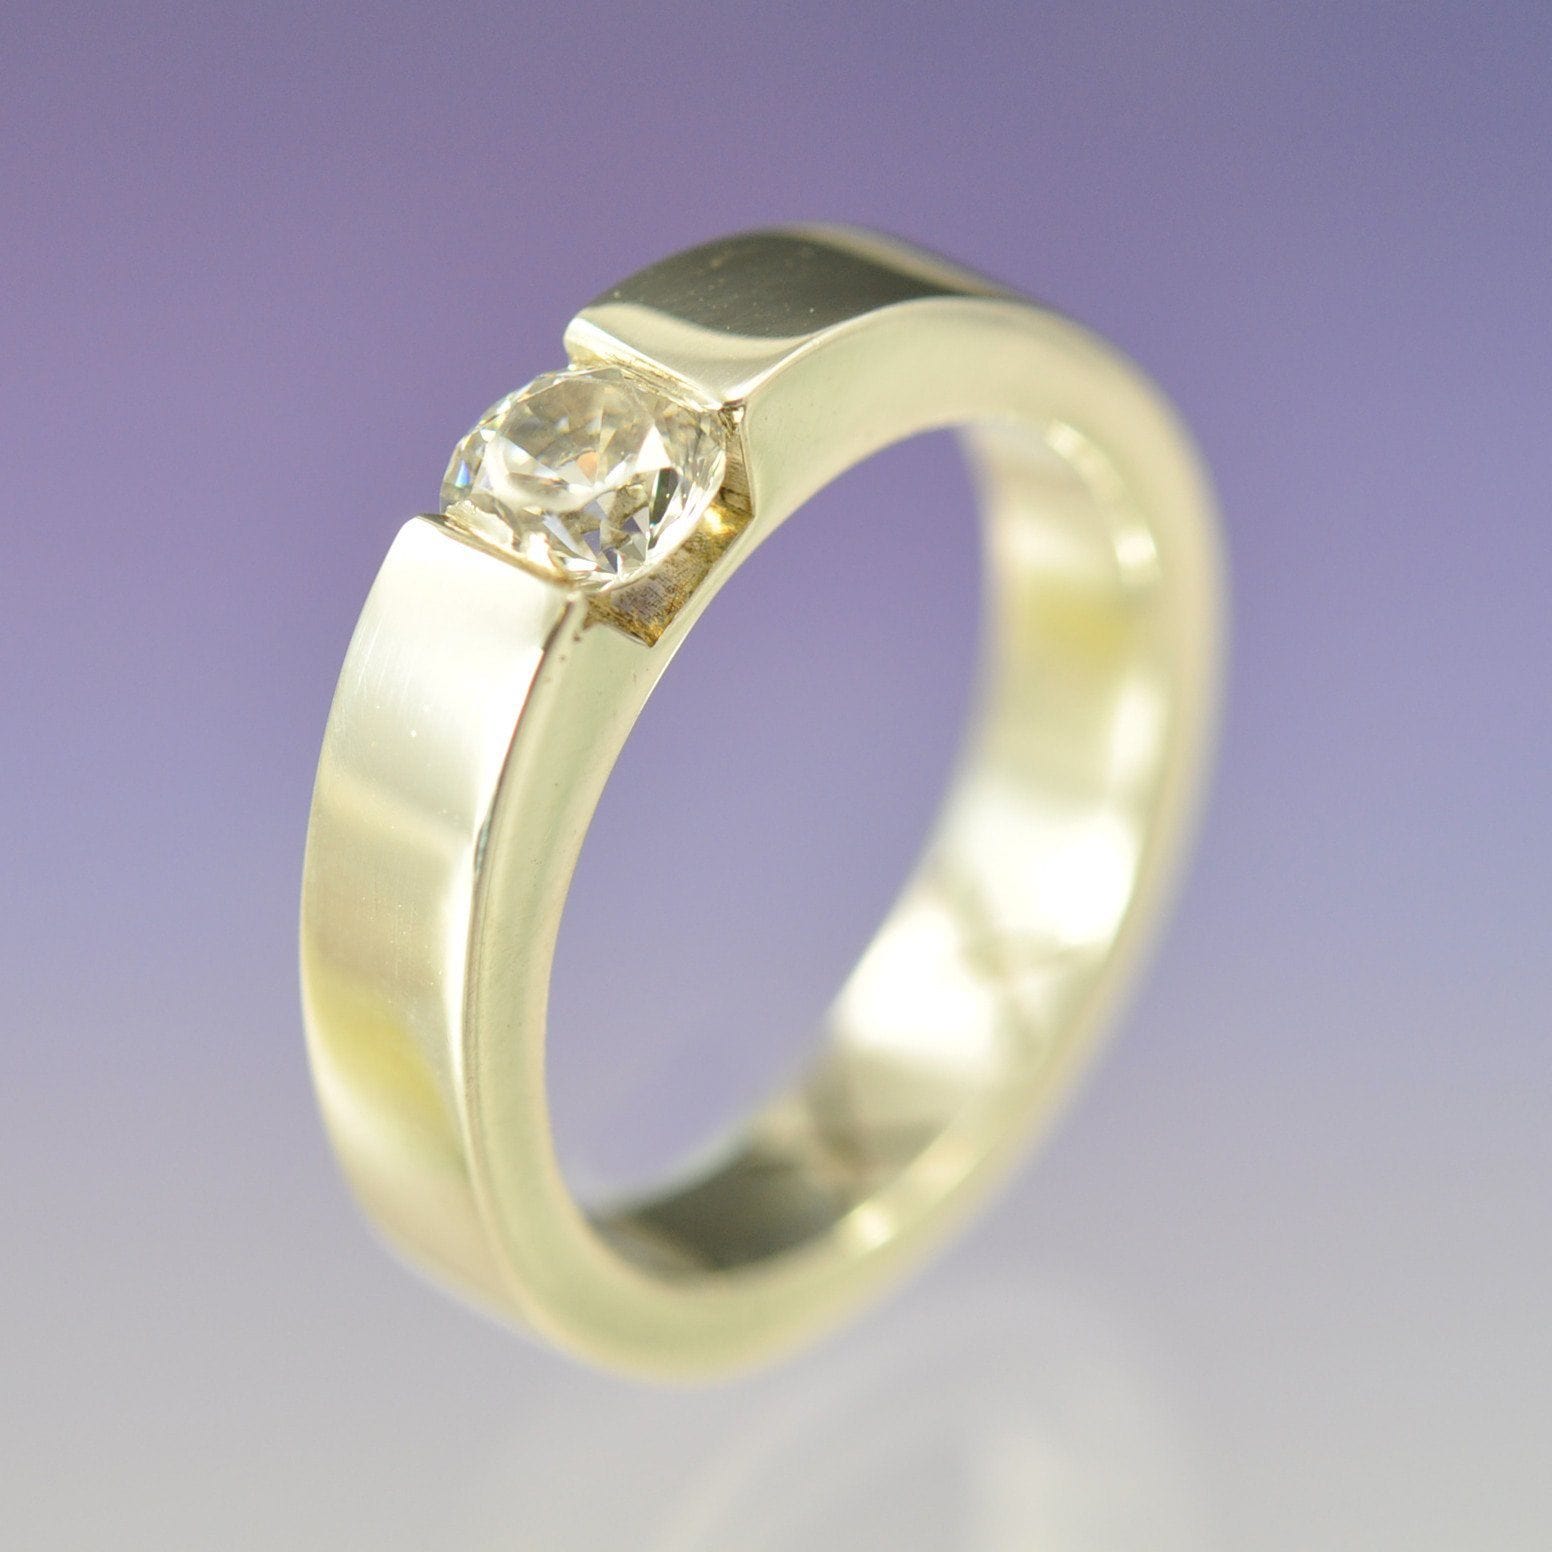 https://chris-parry-handmade.co.uk/cdn/shop/files/chris-parry-handmade-ring-faux-tension-set-diamond-ring-24050614474.jpg?v=1703098599&width=1946